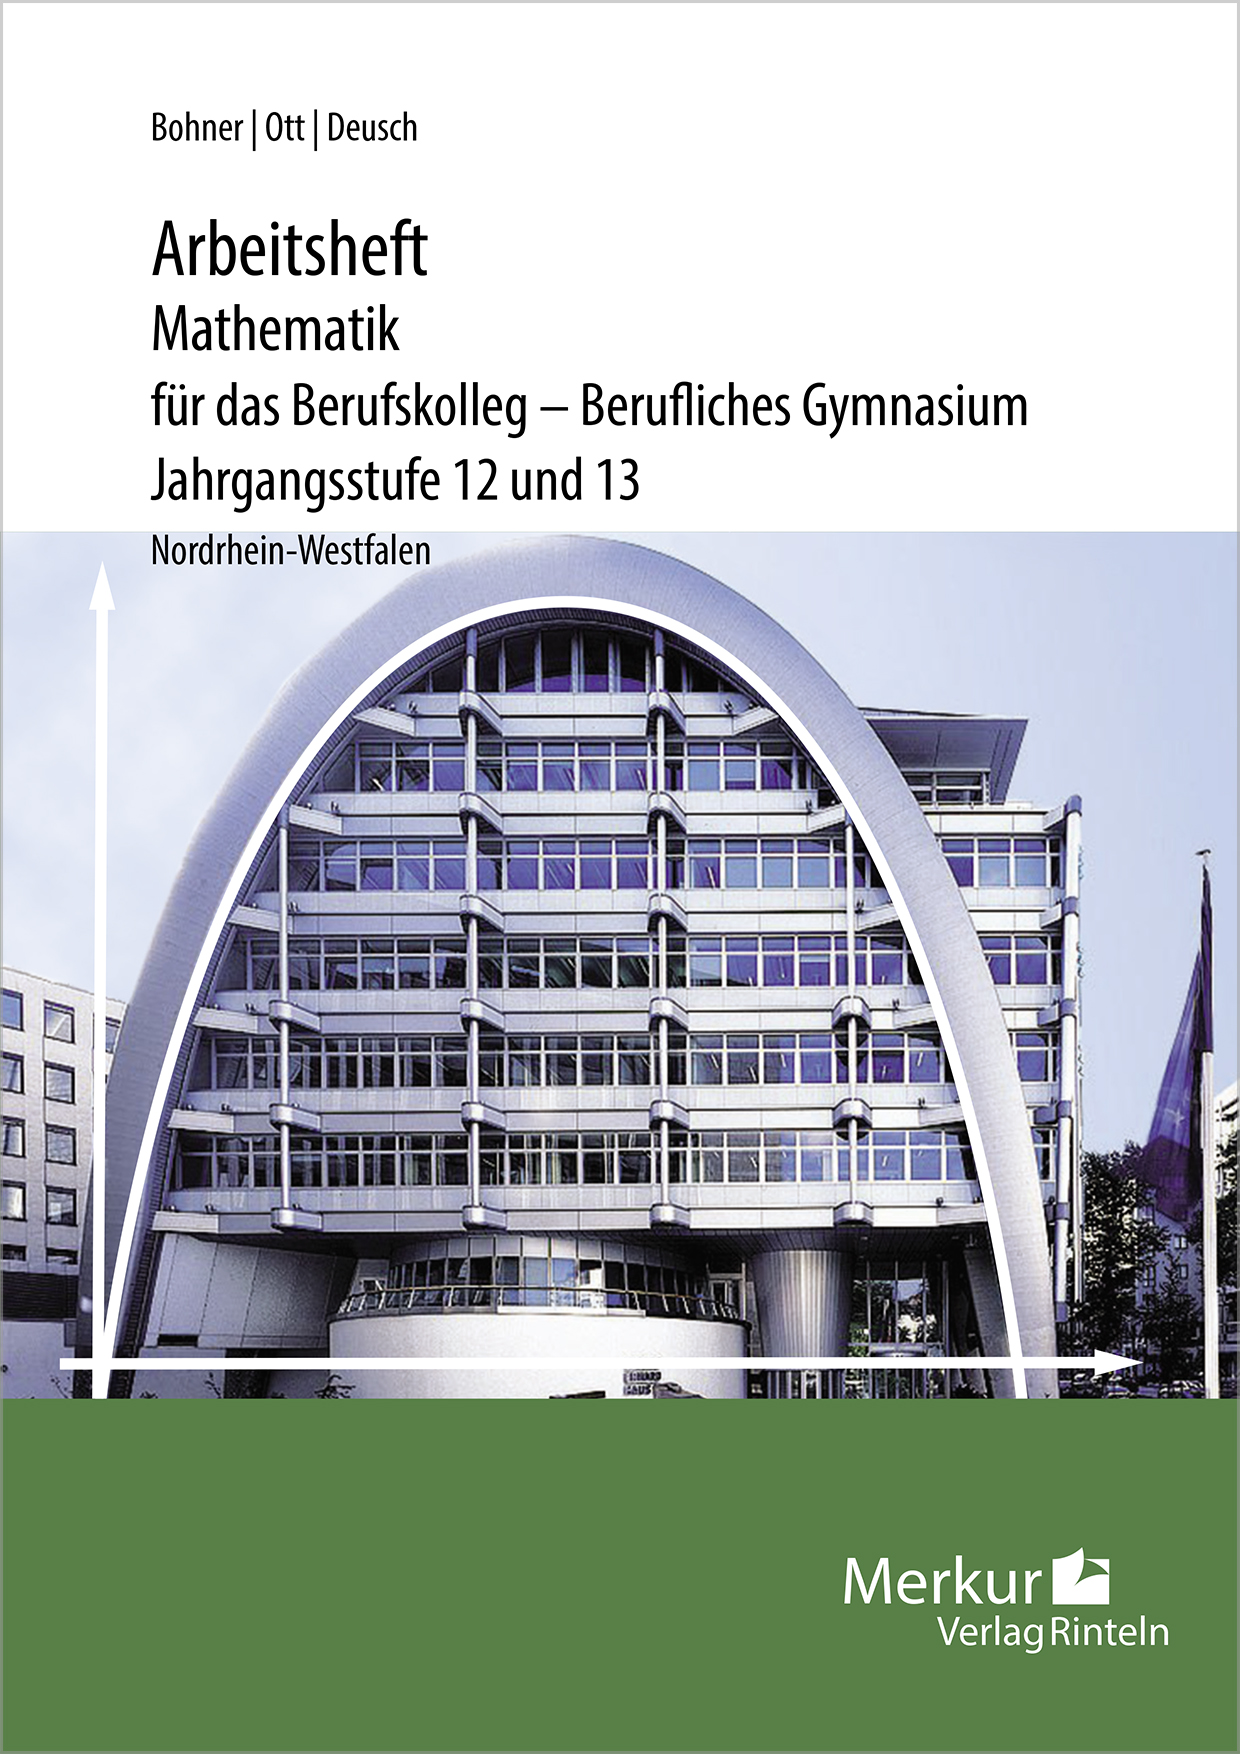 Mathematik für das Berufskolleg - Berufliches Gymnasium - Arbeitsheft Jahrgangsstufe 12 und 13 - inklusive Lösungen - (NRW)